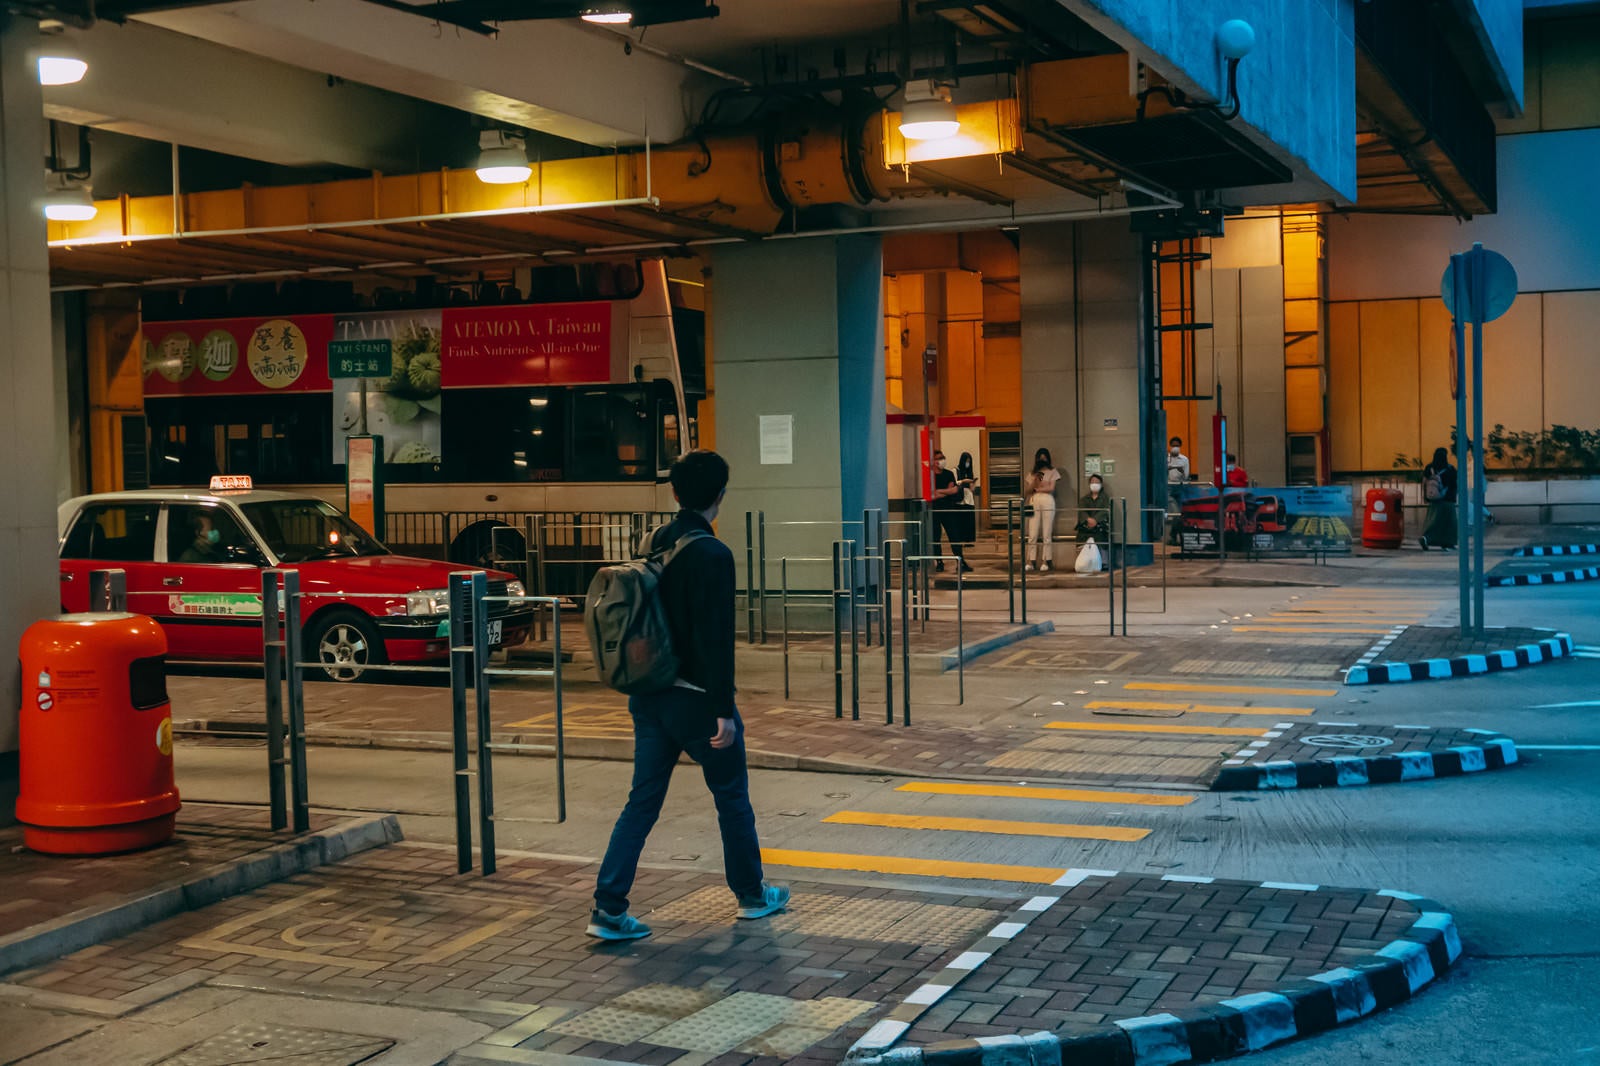 「バス乗り場に向かうリュックサック香港男子」の写真